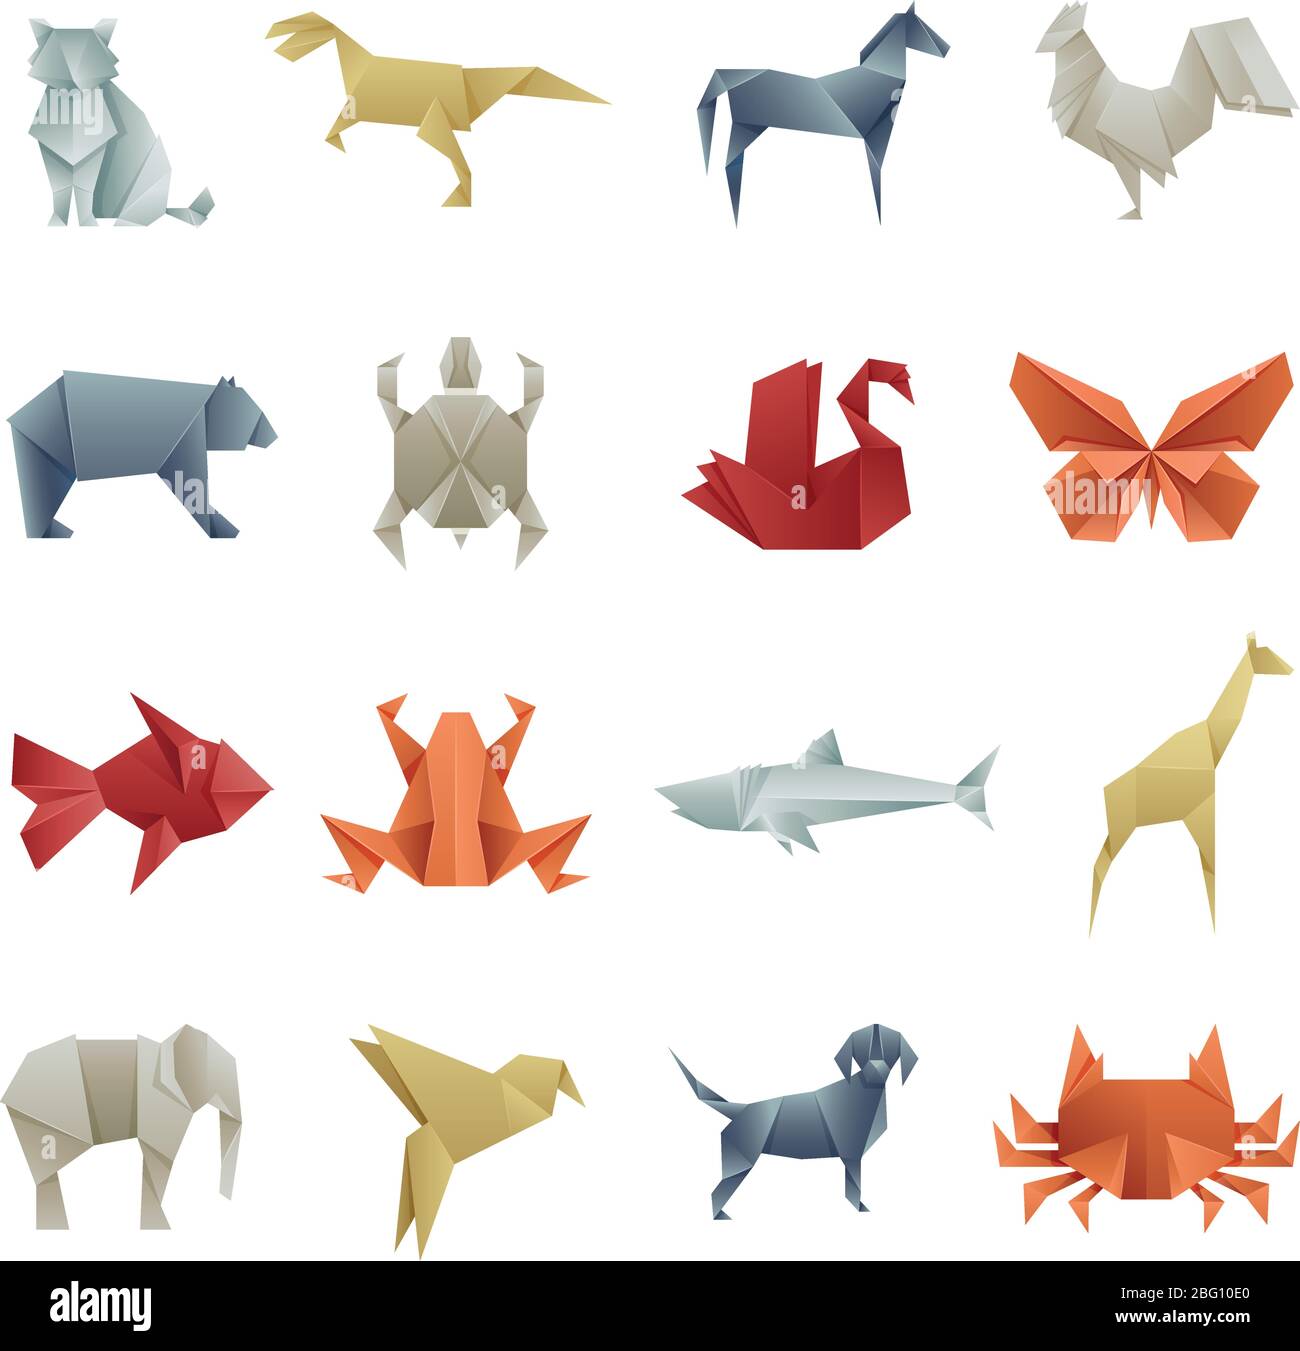 Origami papier animaux asian Creative Vector Art. Origami japon animal papillon et ours, tortue et girafe illustration Illustration de Vecteur